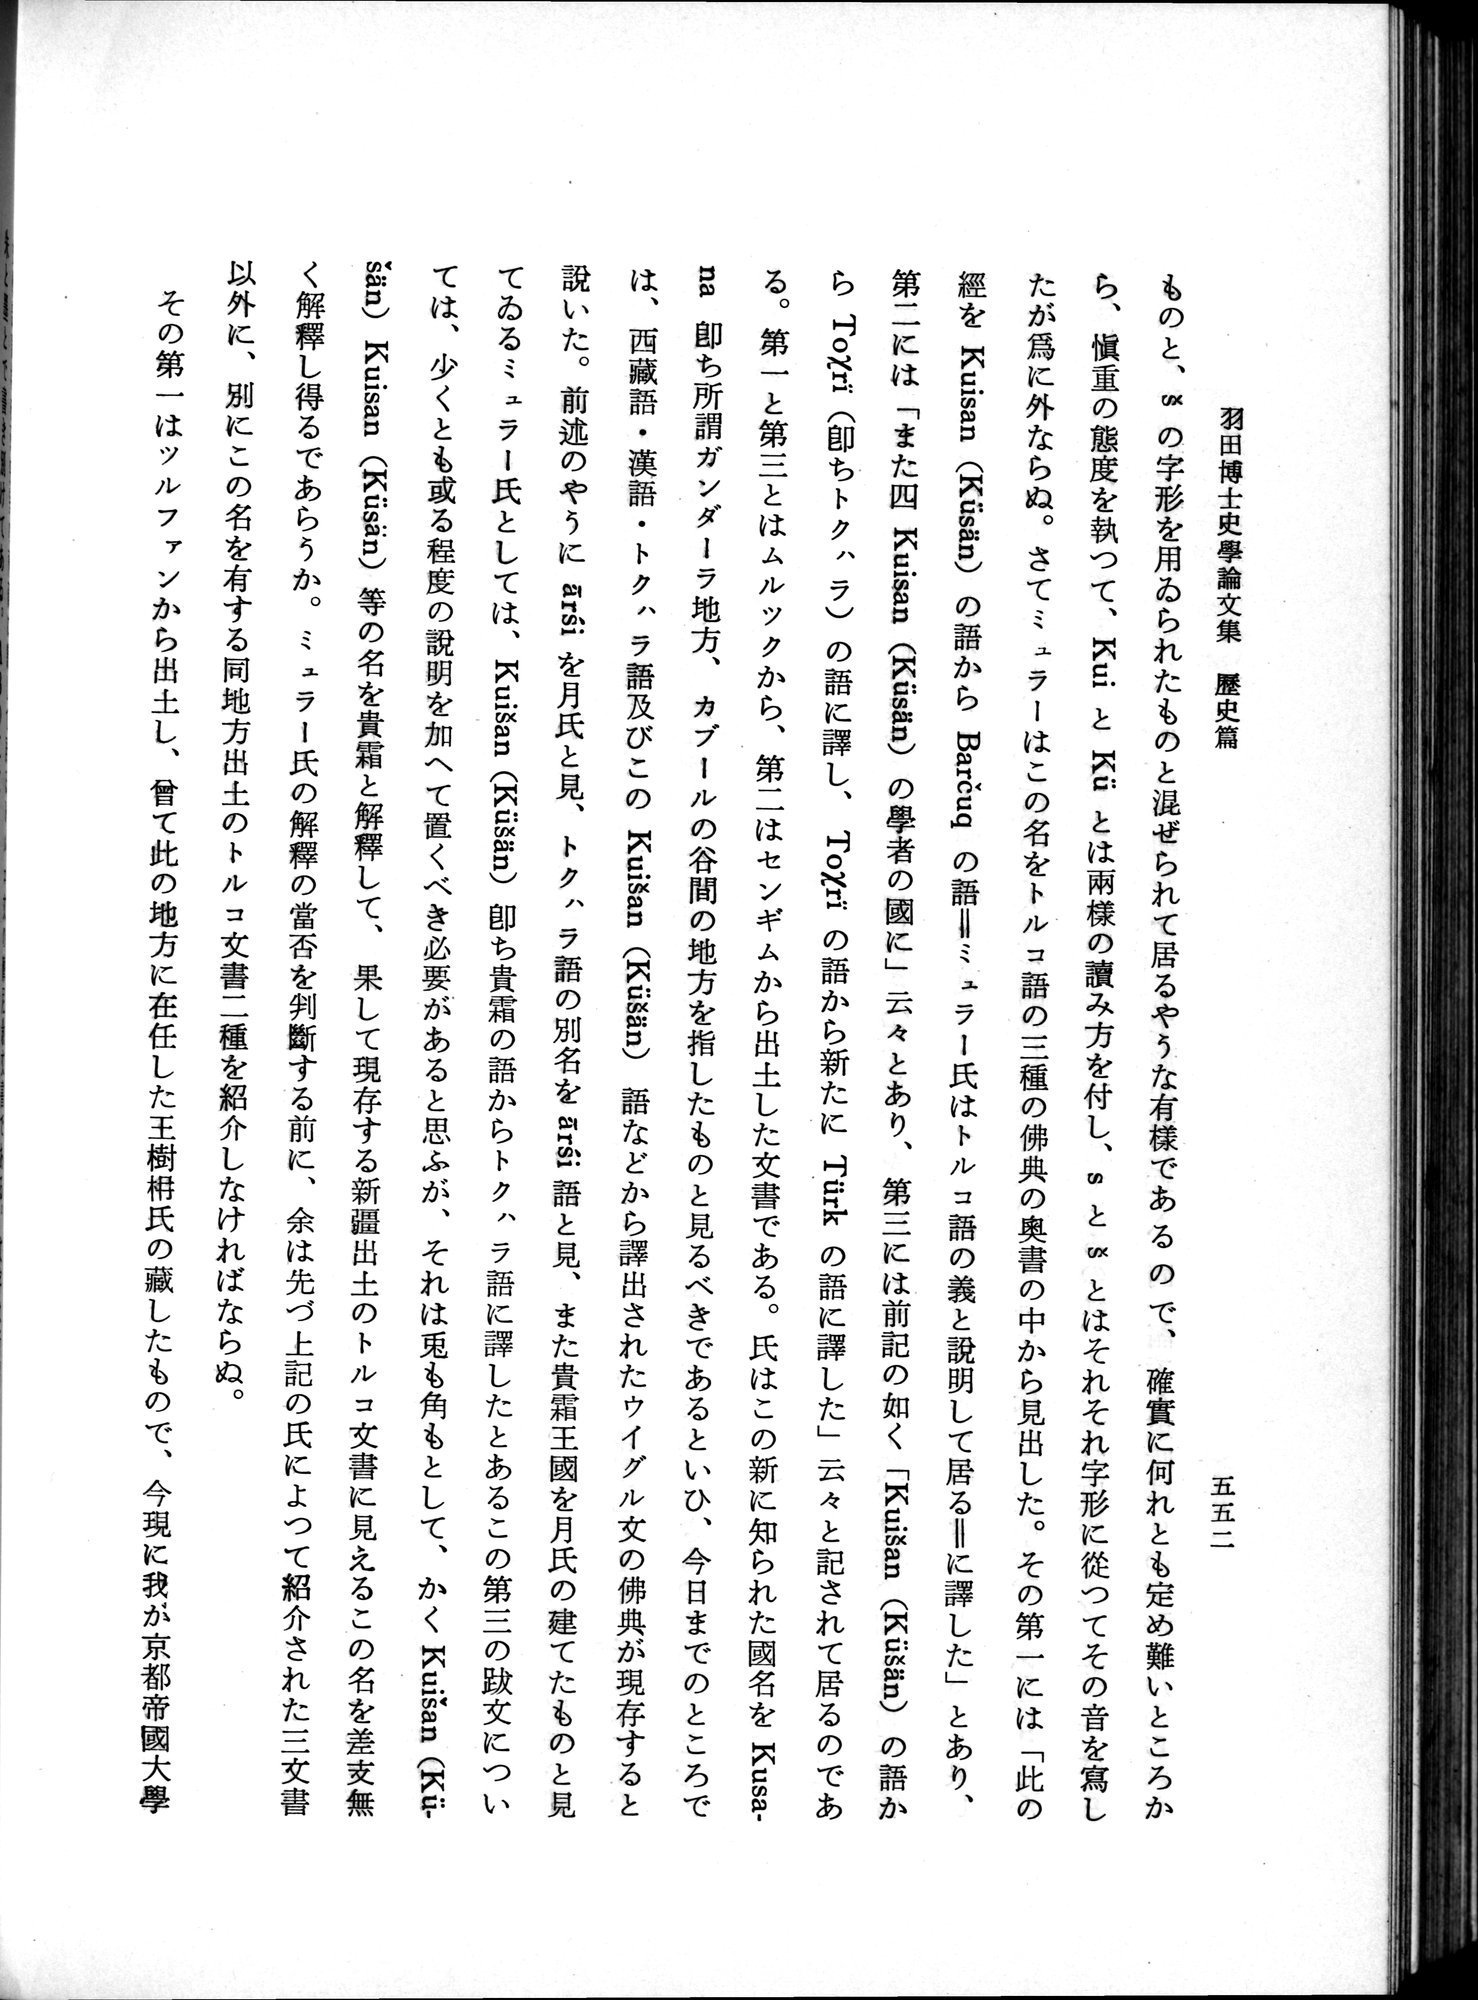 羽田博士史学論文集 : vol.1 / Page 590 (Grayscale High Resolution Image)